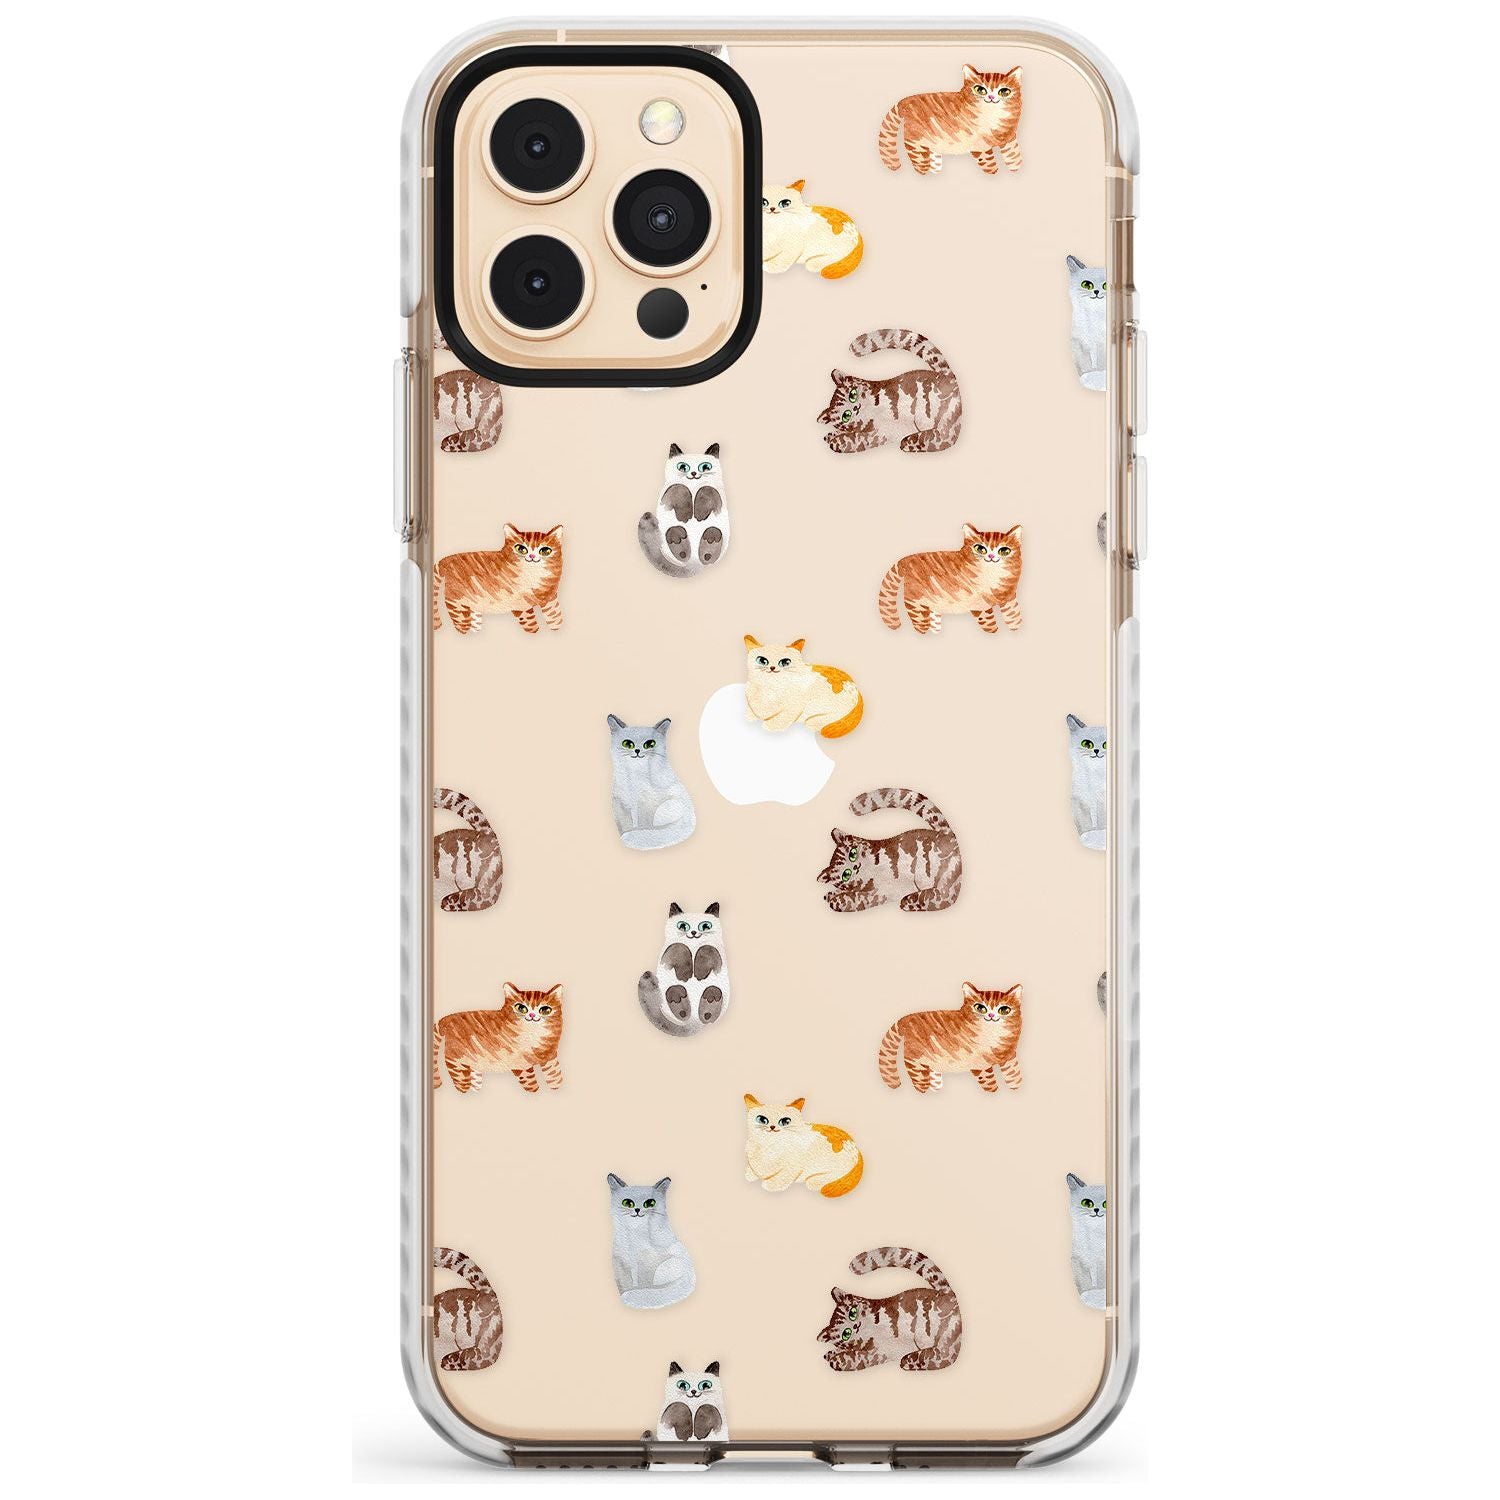 Cute Cat Pattern - Clear Slim TPU Phone Case for iPhone 11 Pro Max